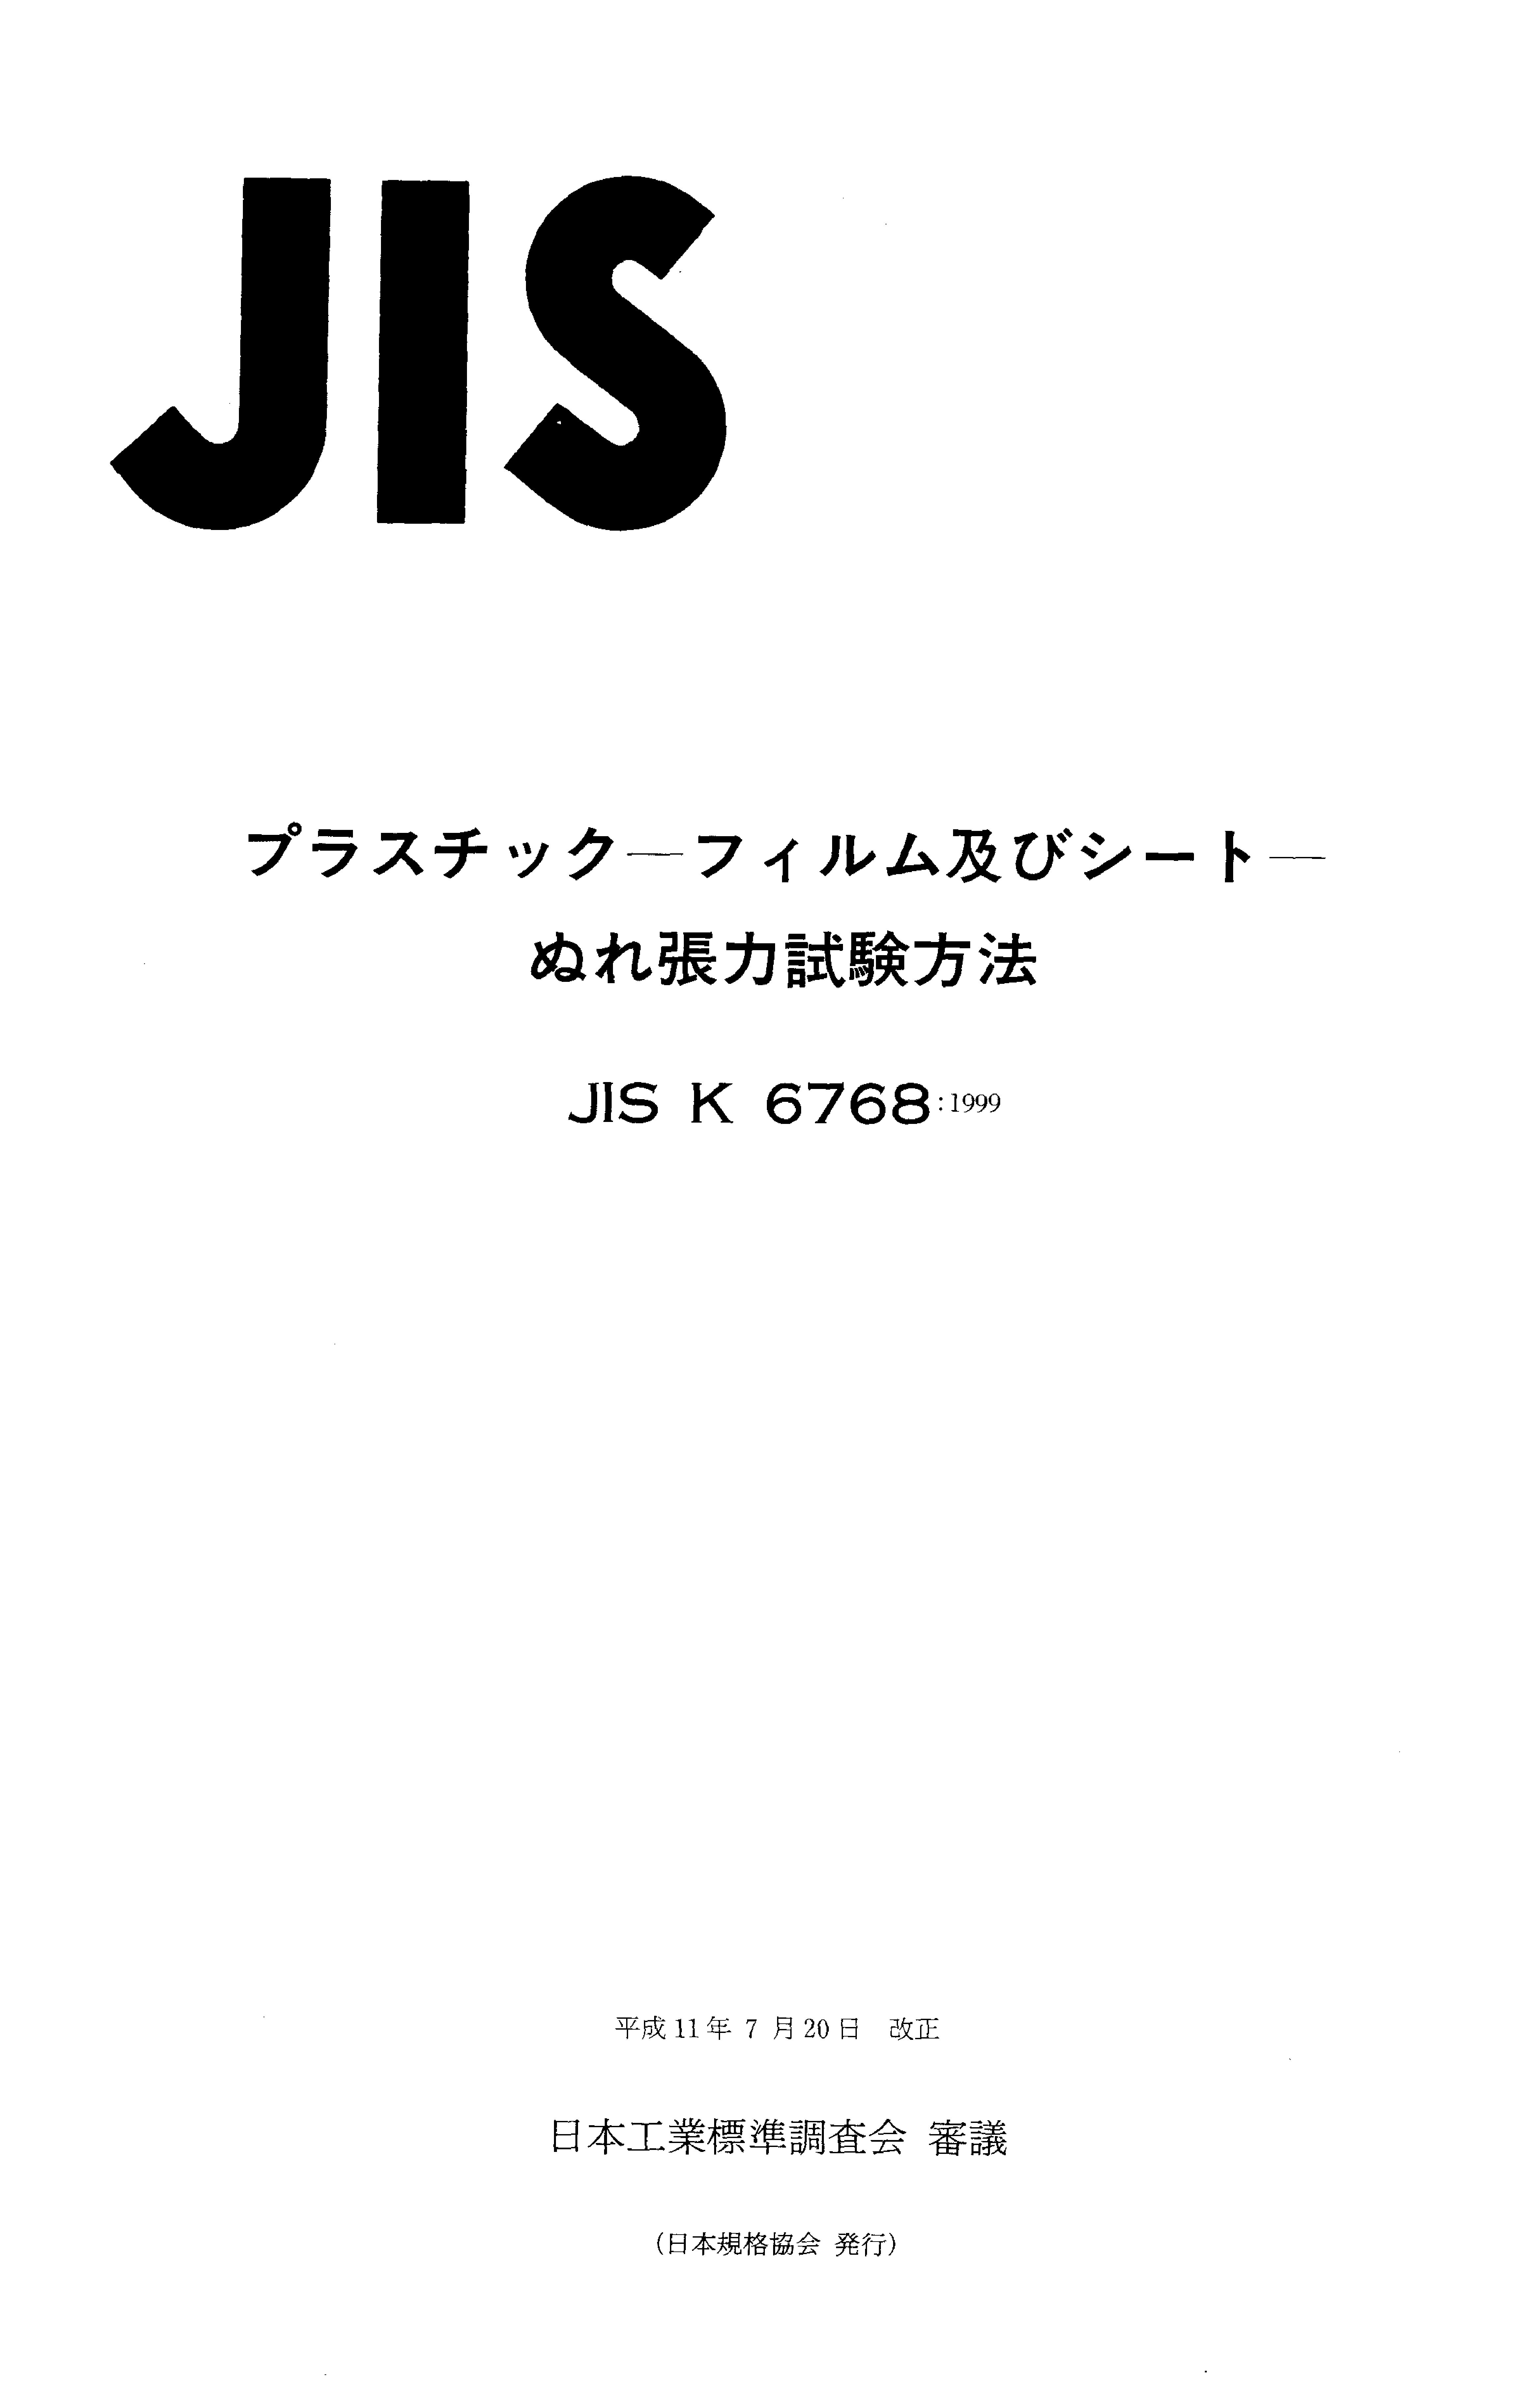 JIS K 6768:1999